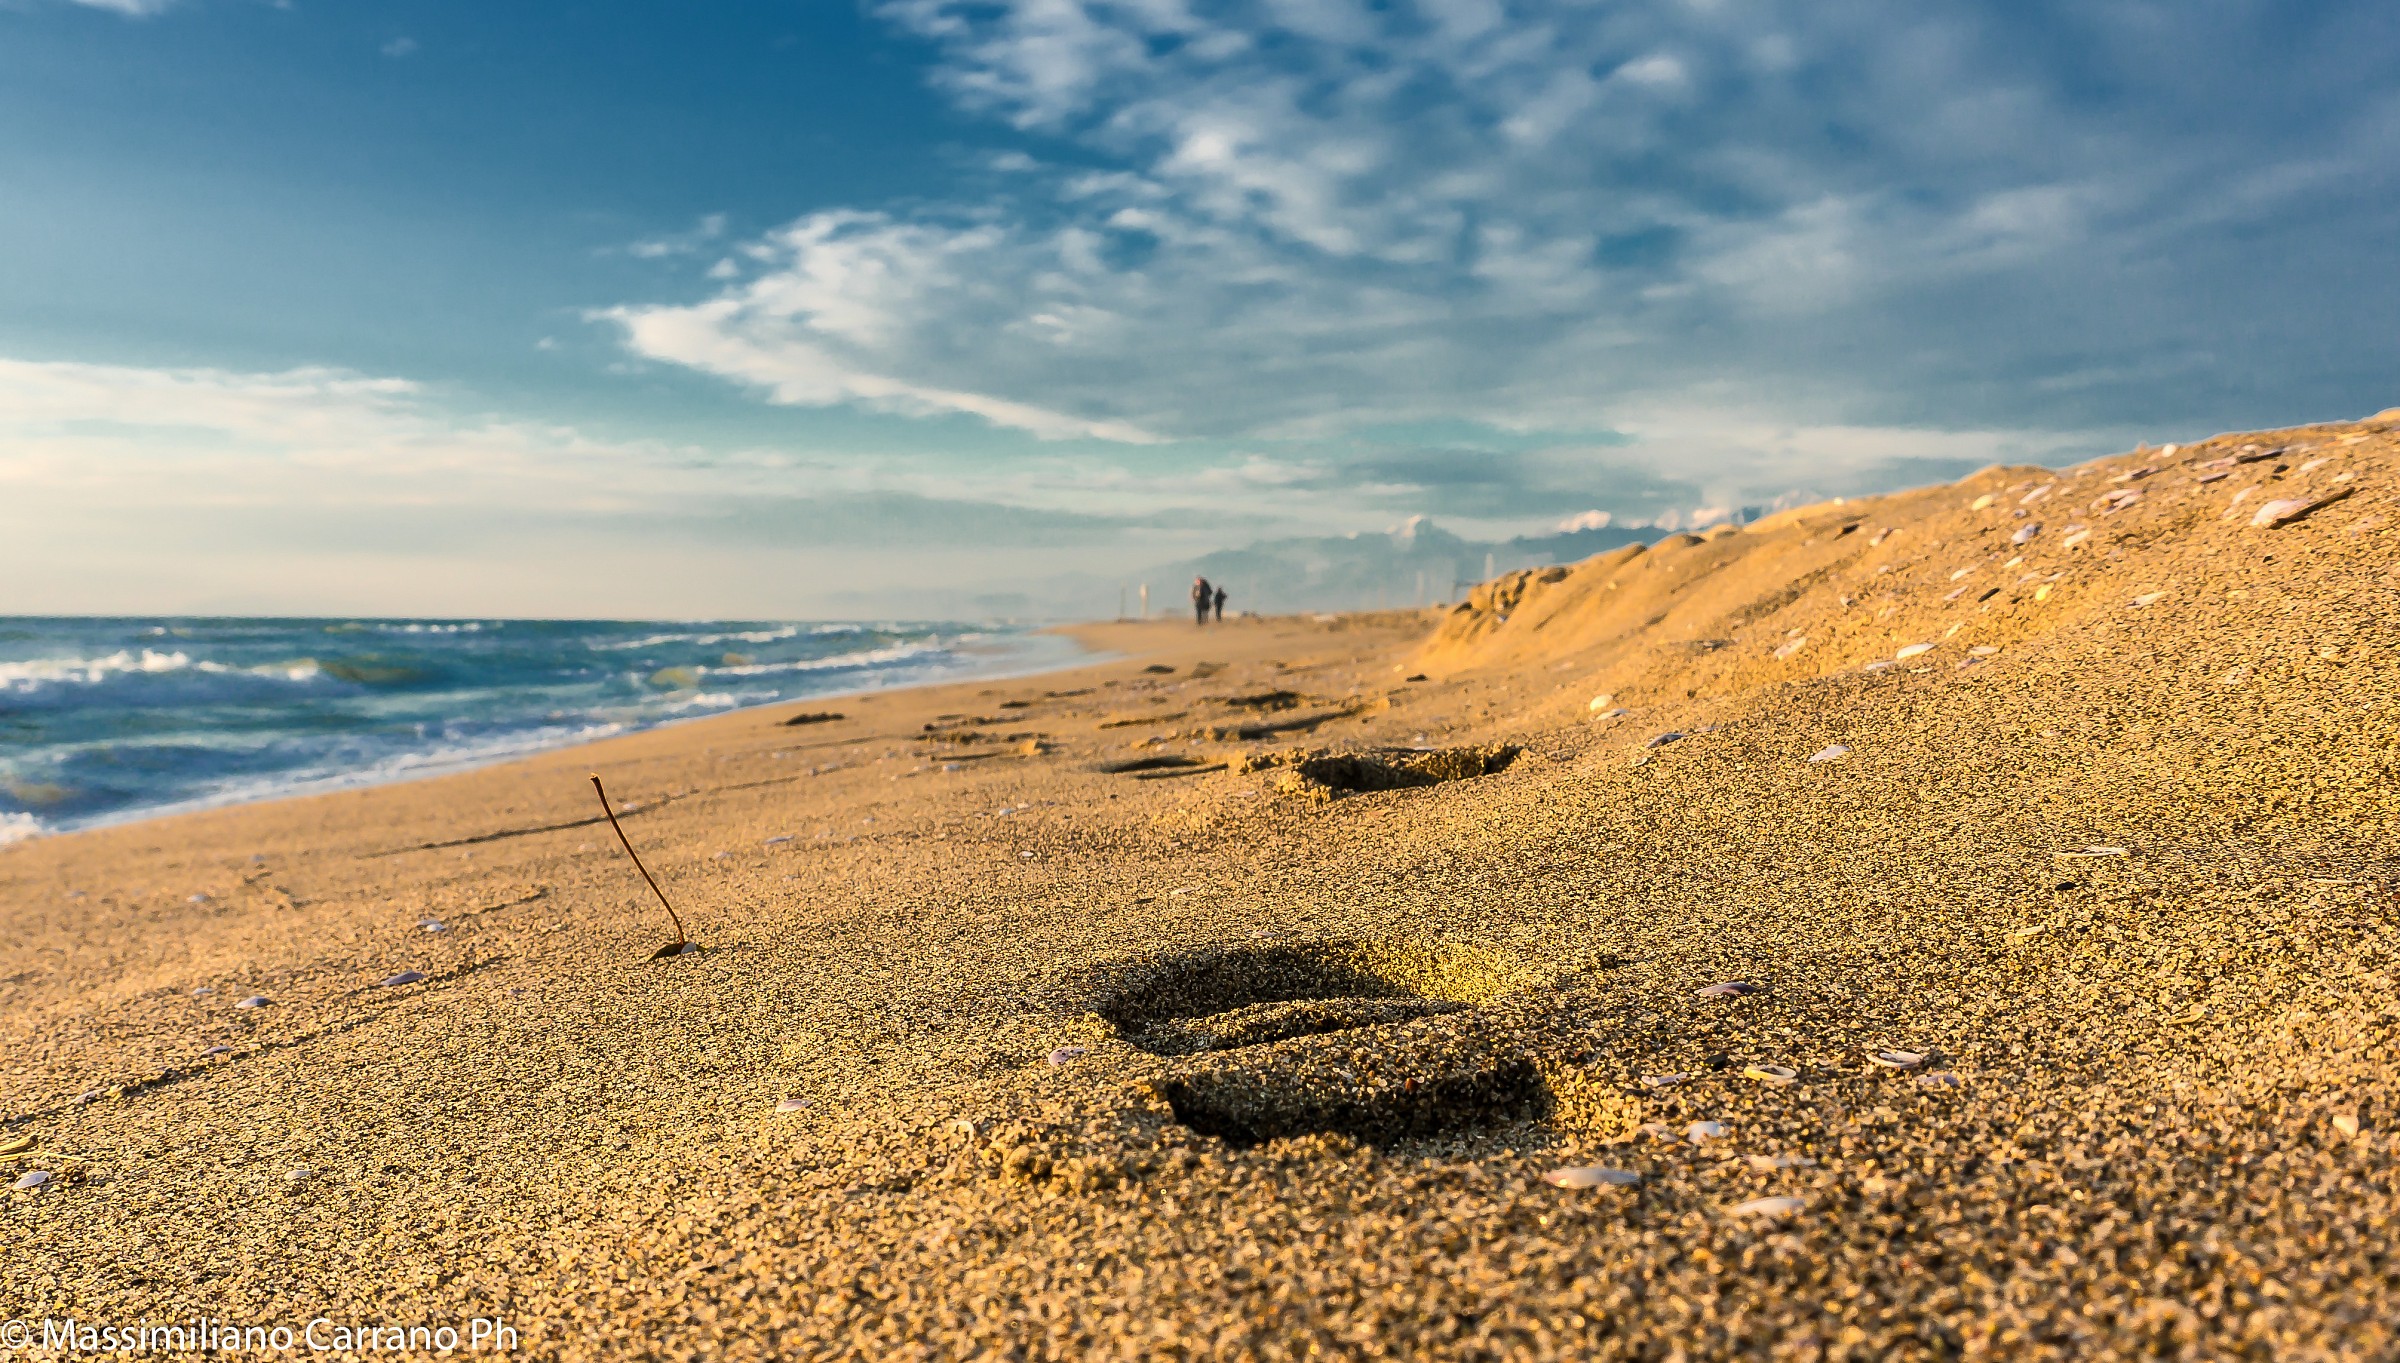 Footprints on the beach...